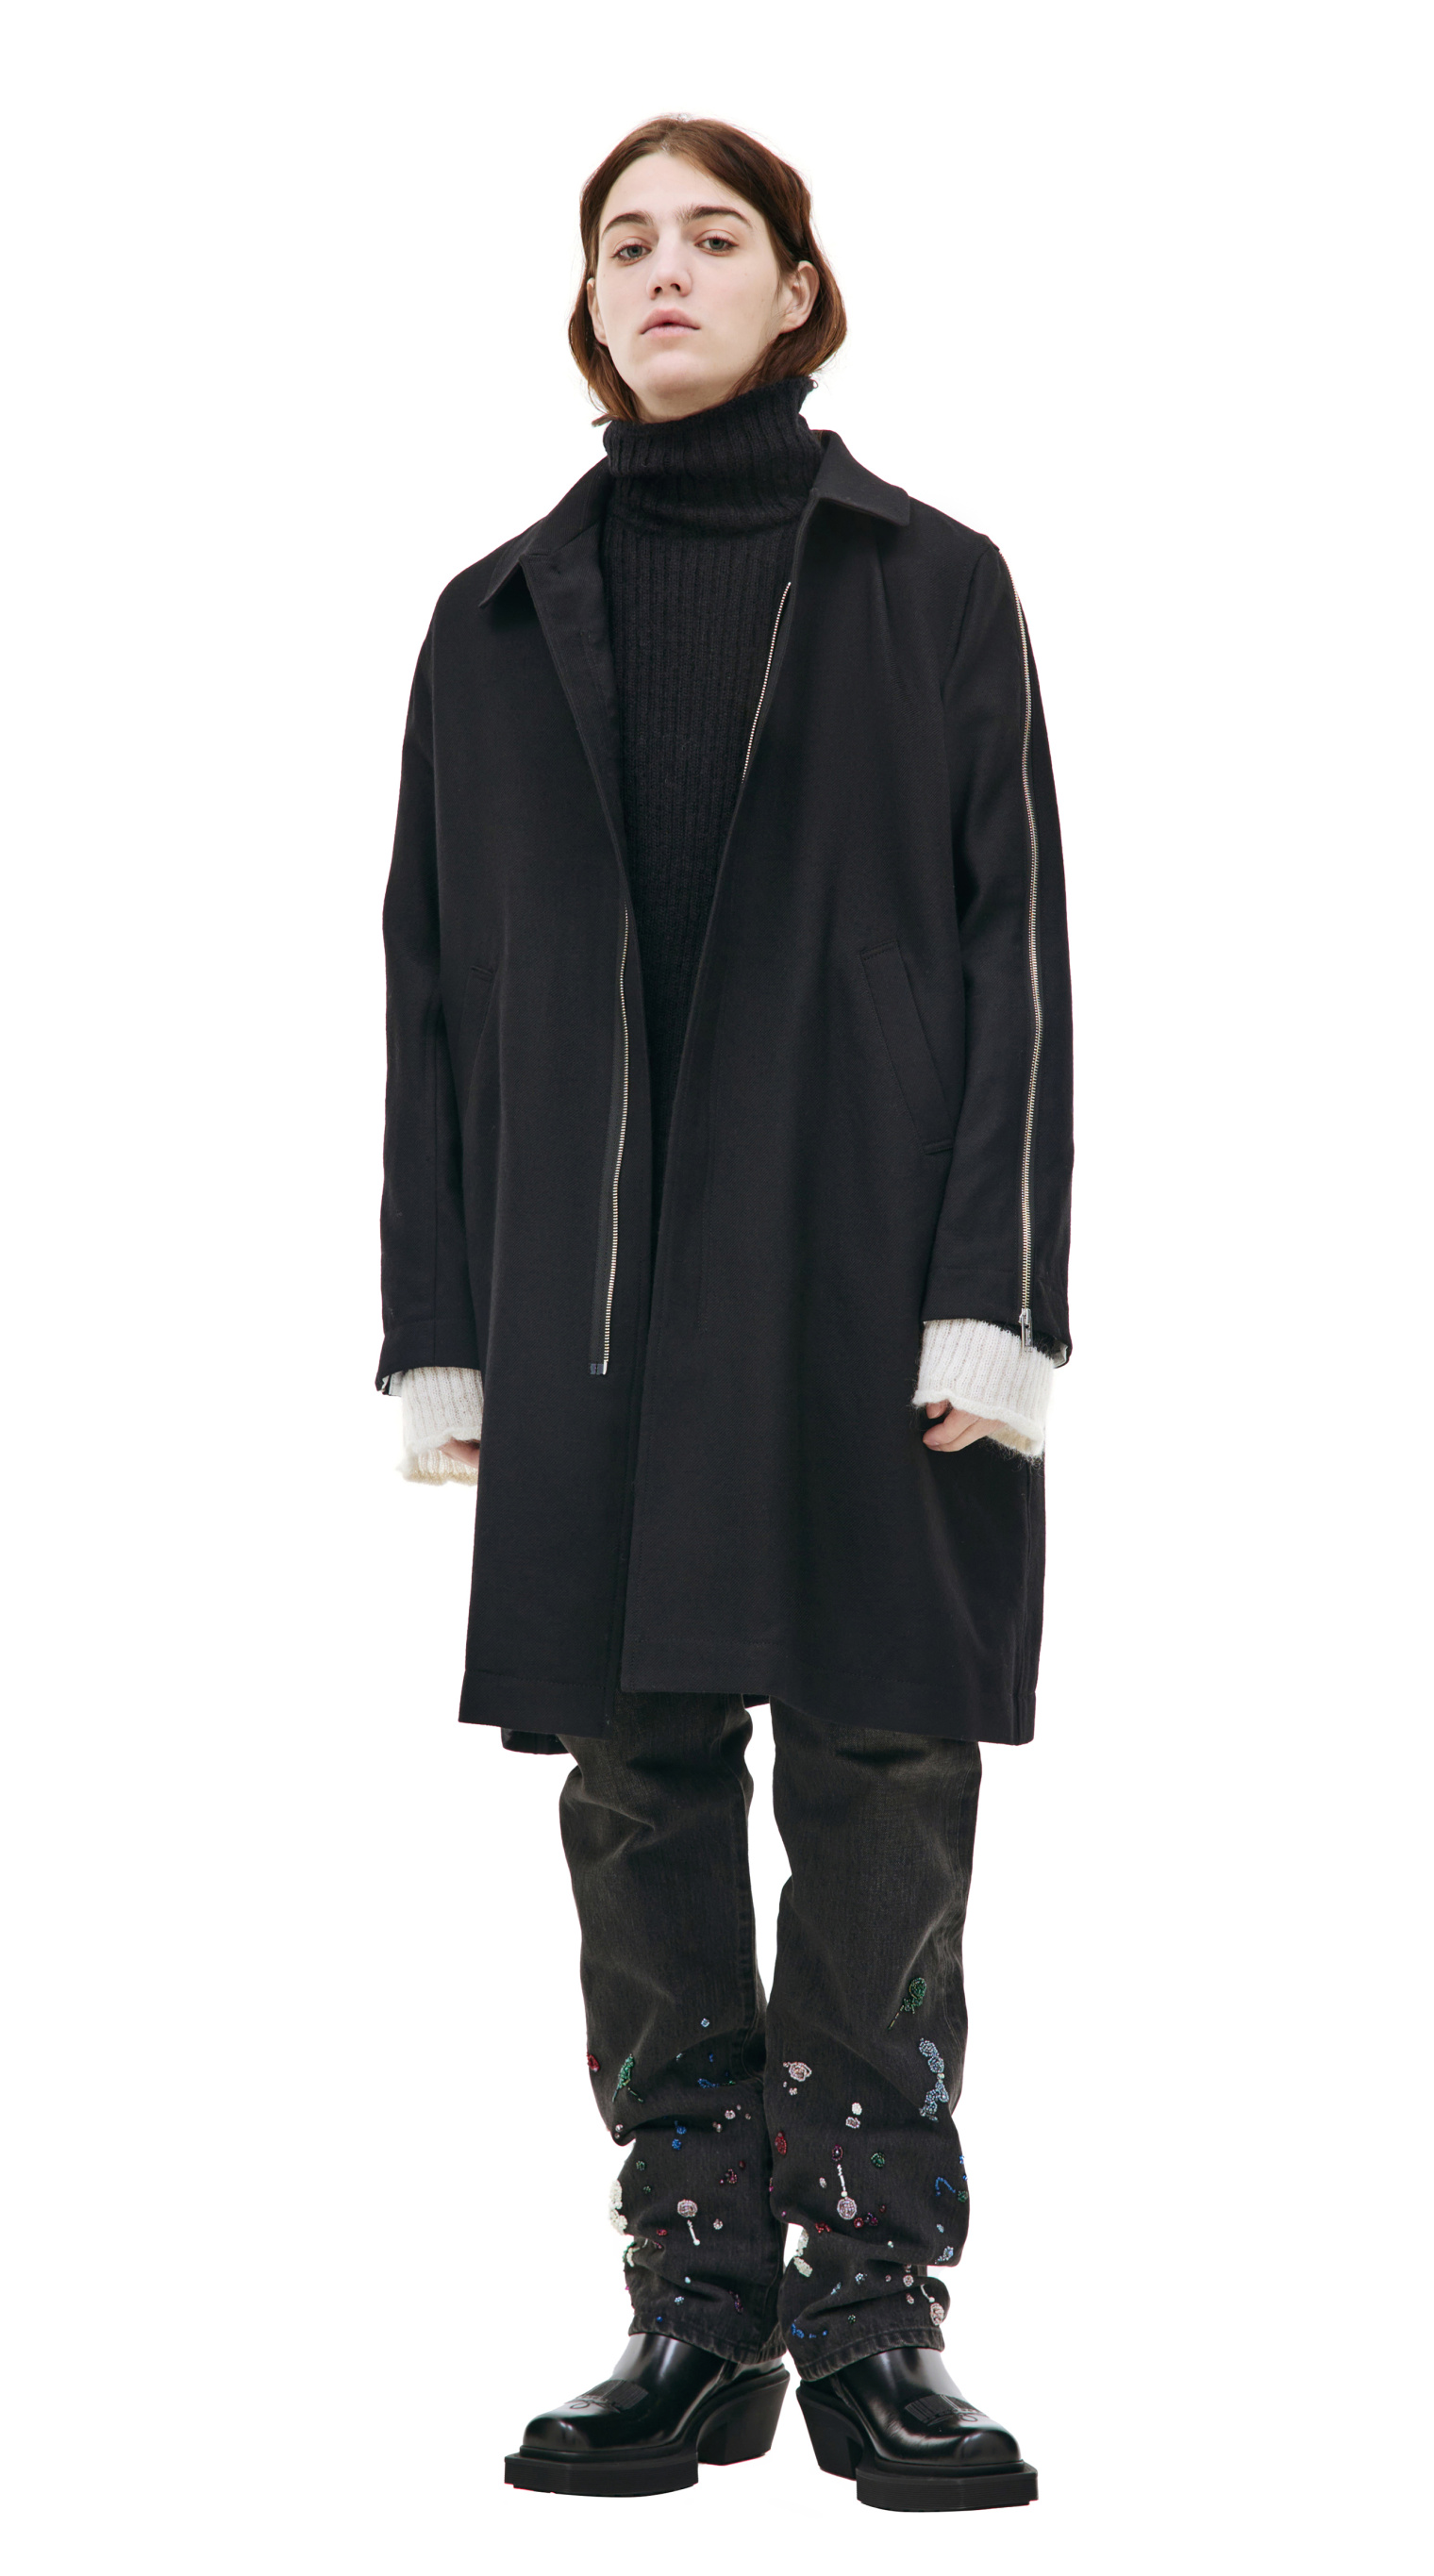 Undercover Black zip coat